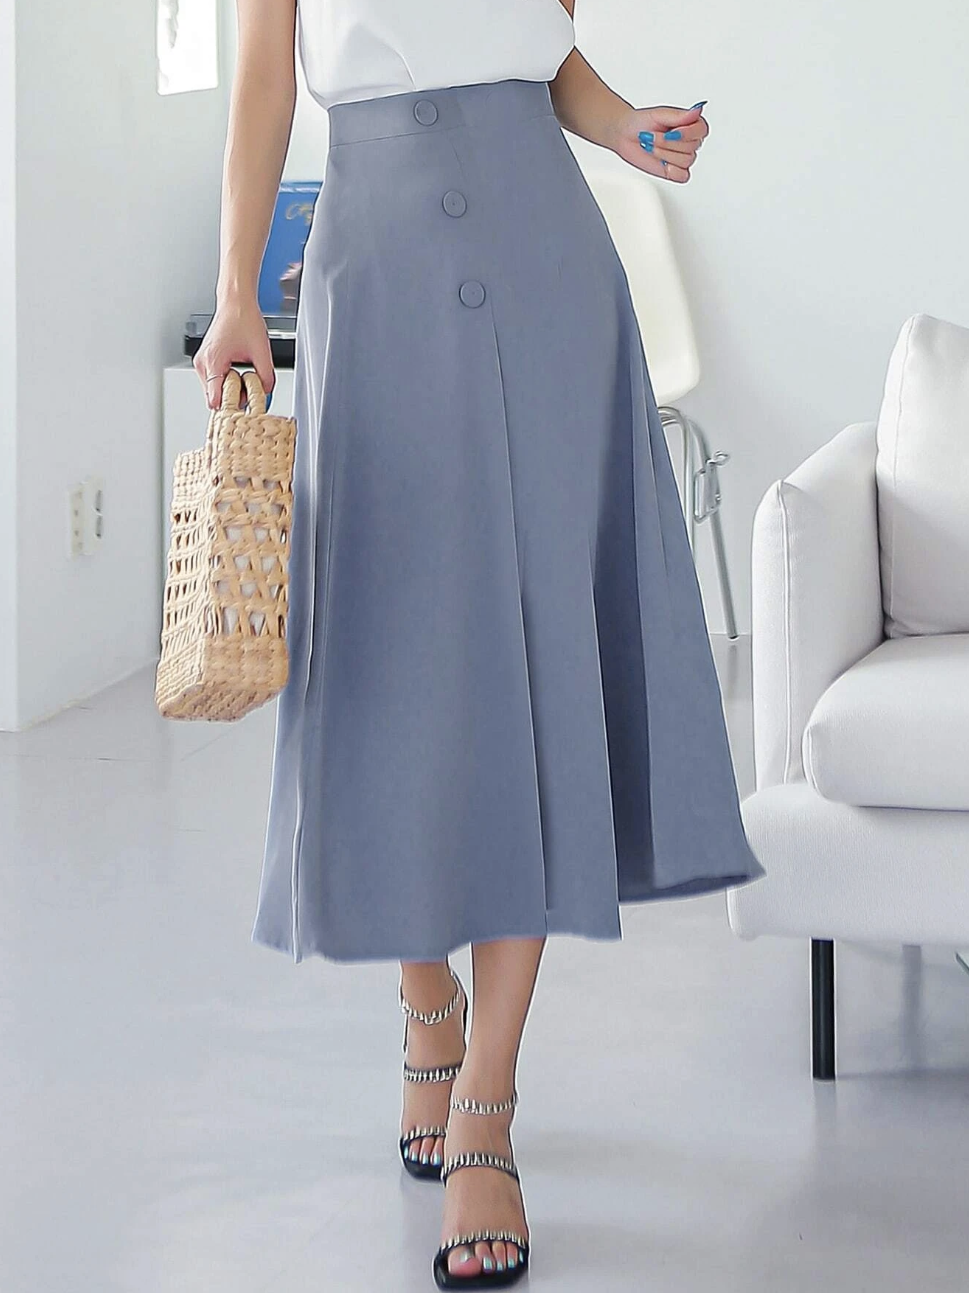 Nếu chuộng phong cách tối giản thanh lịch, bạn hãy học cách sắm đồ giống nữ blogger người Hàn này - Ảnh 14.